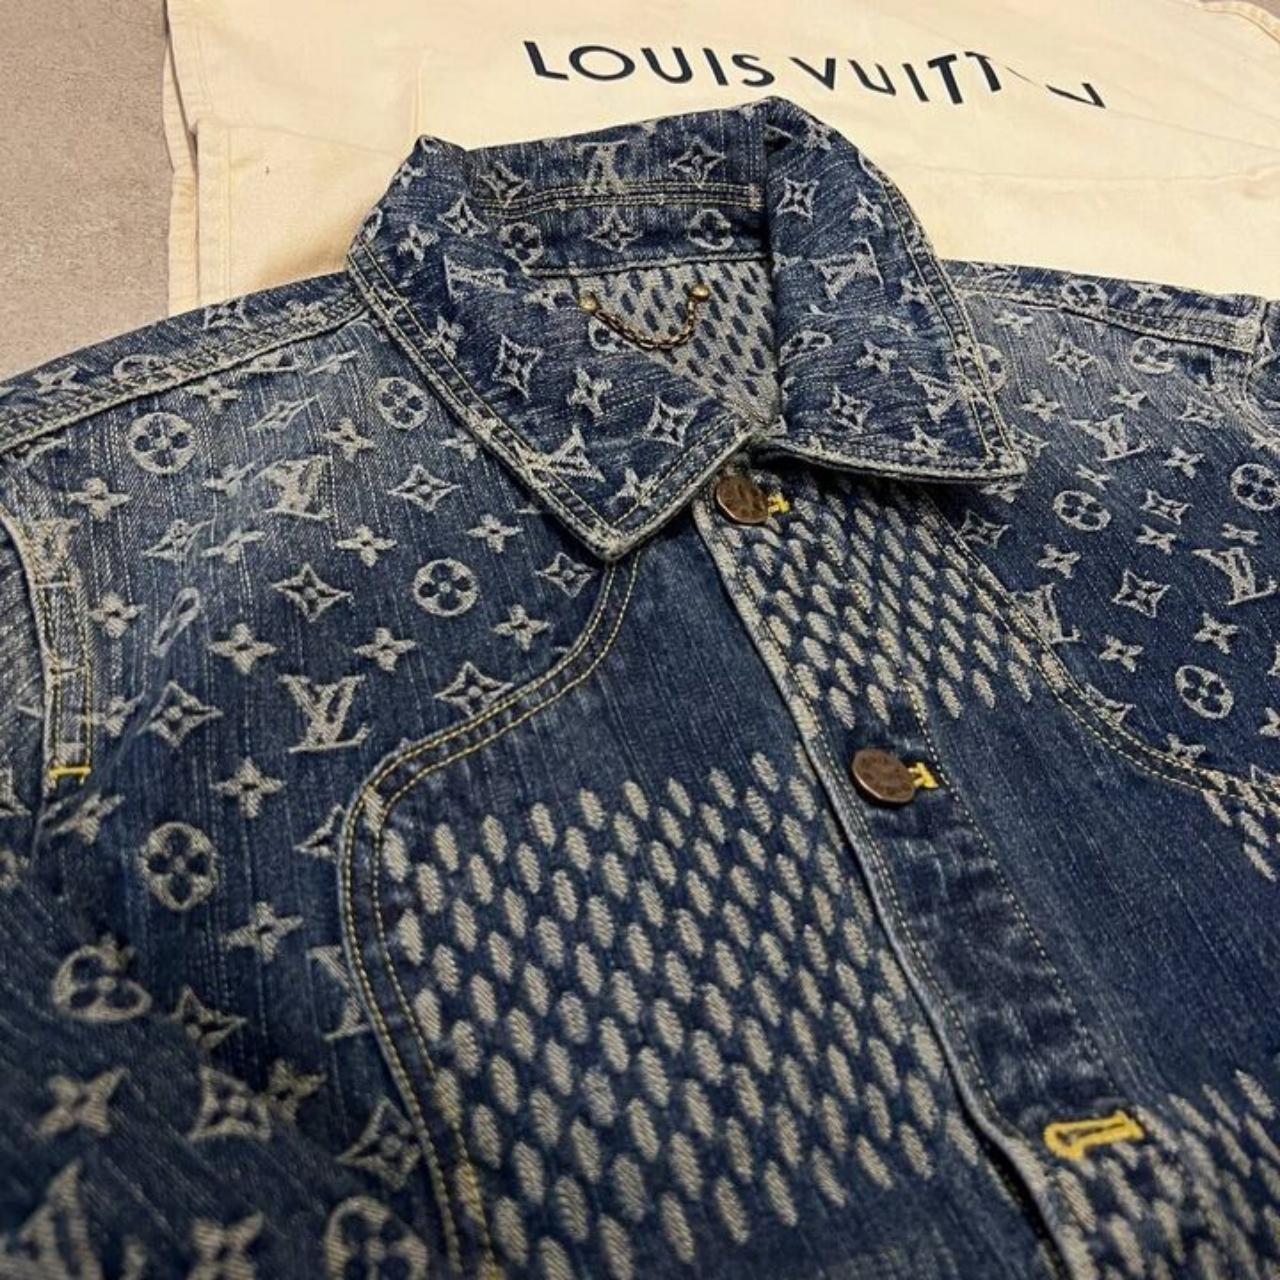 Vintage 80s Louis Vuitton Monogram Bag In great - Depop